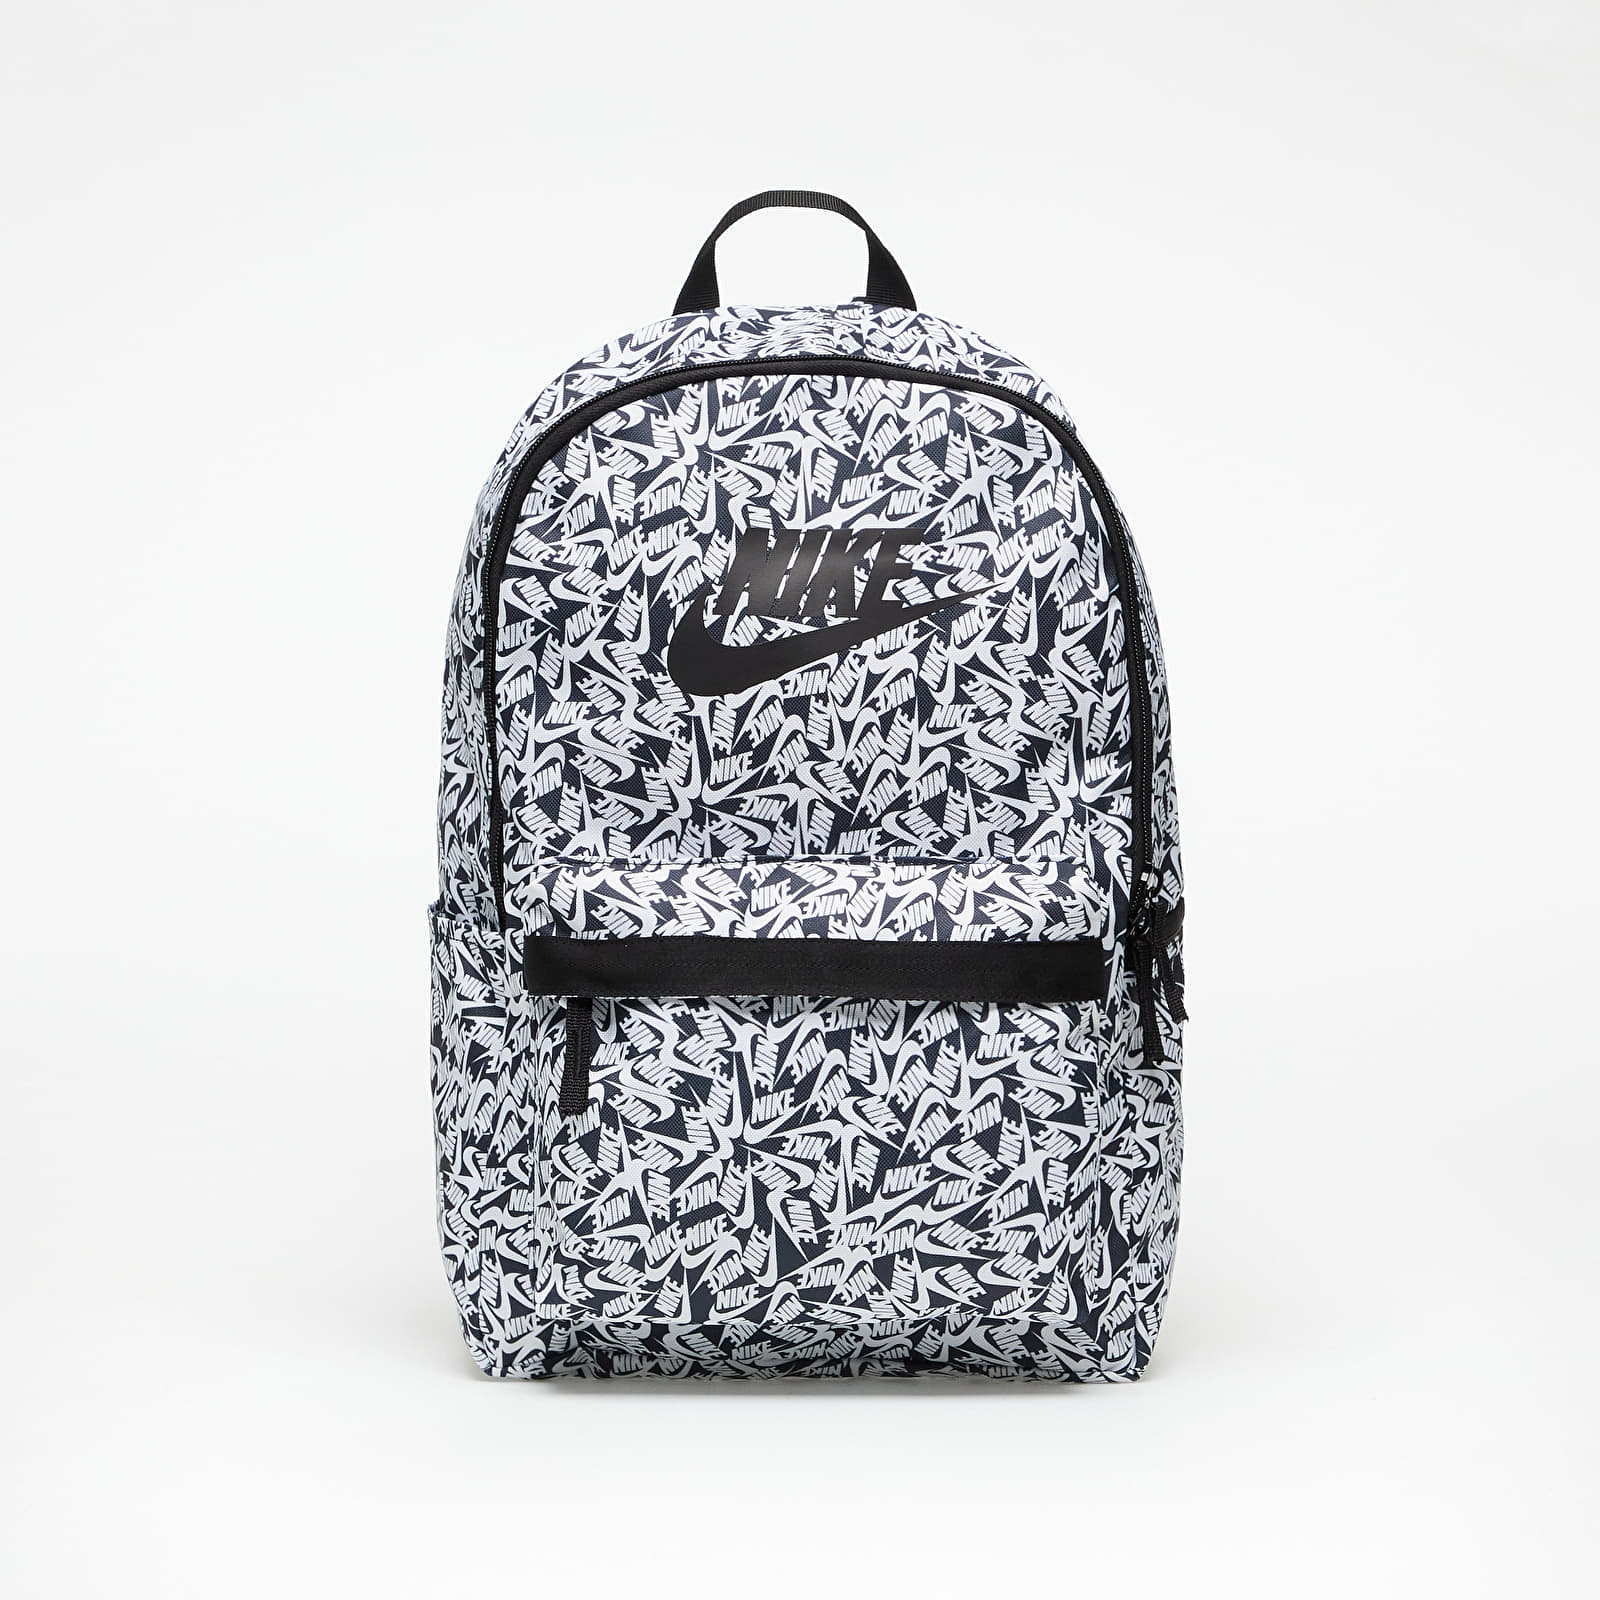 Σακίδια Nike Sportswear Heritage Printed Backpack Black/ White/ Black